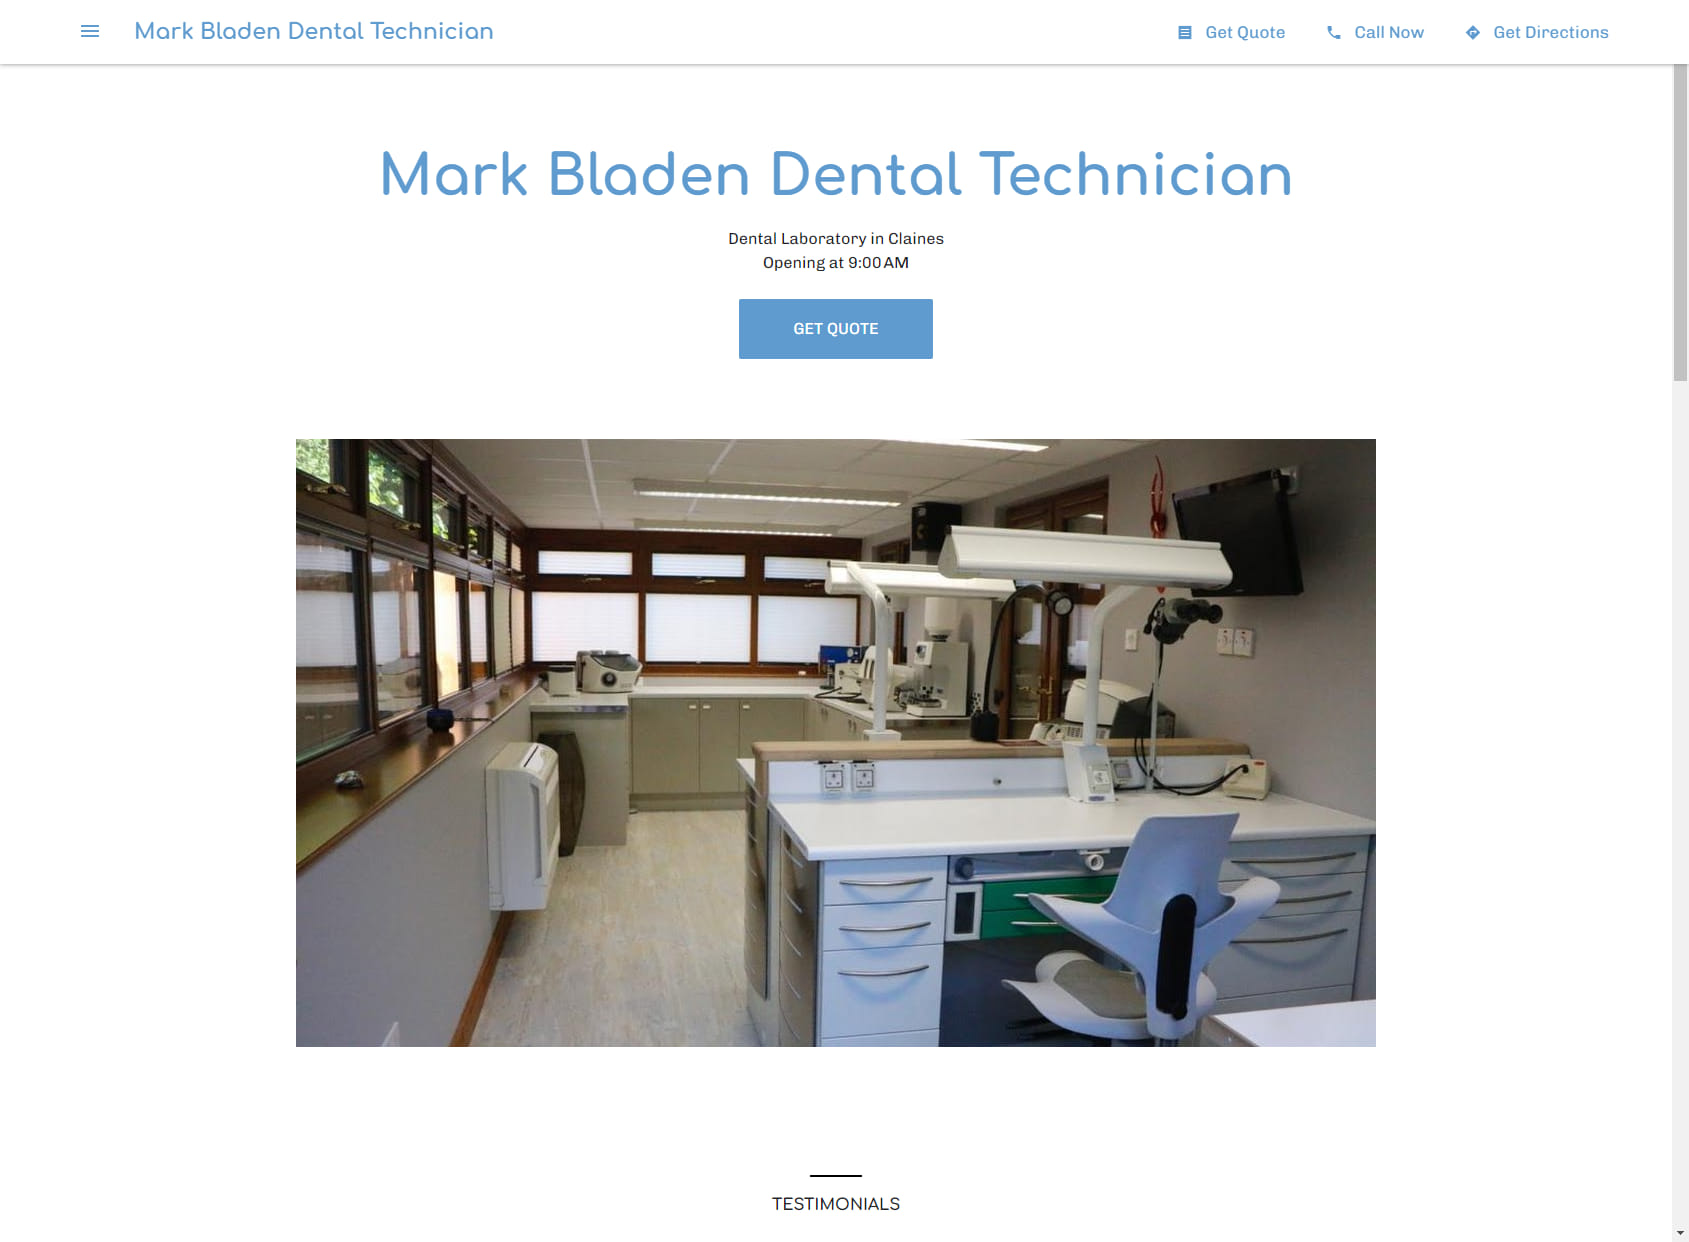 Mark Bladen Dental Technician